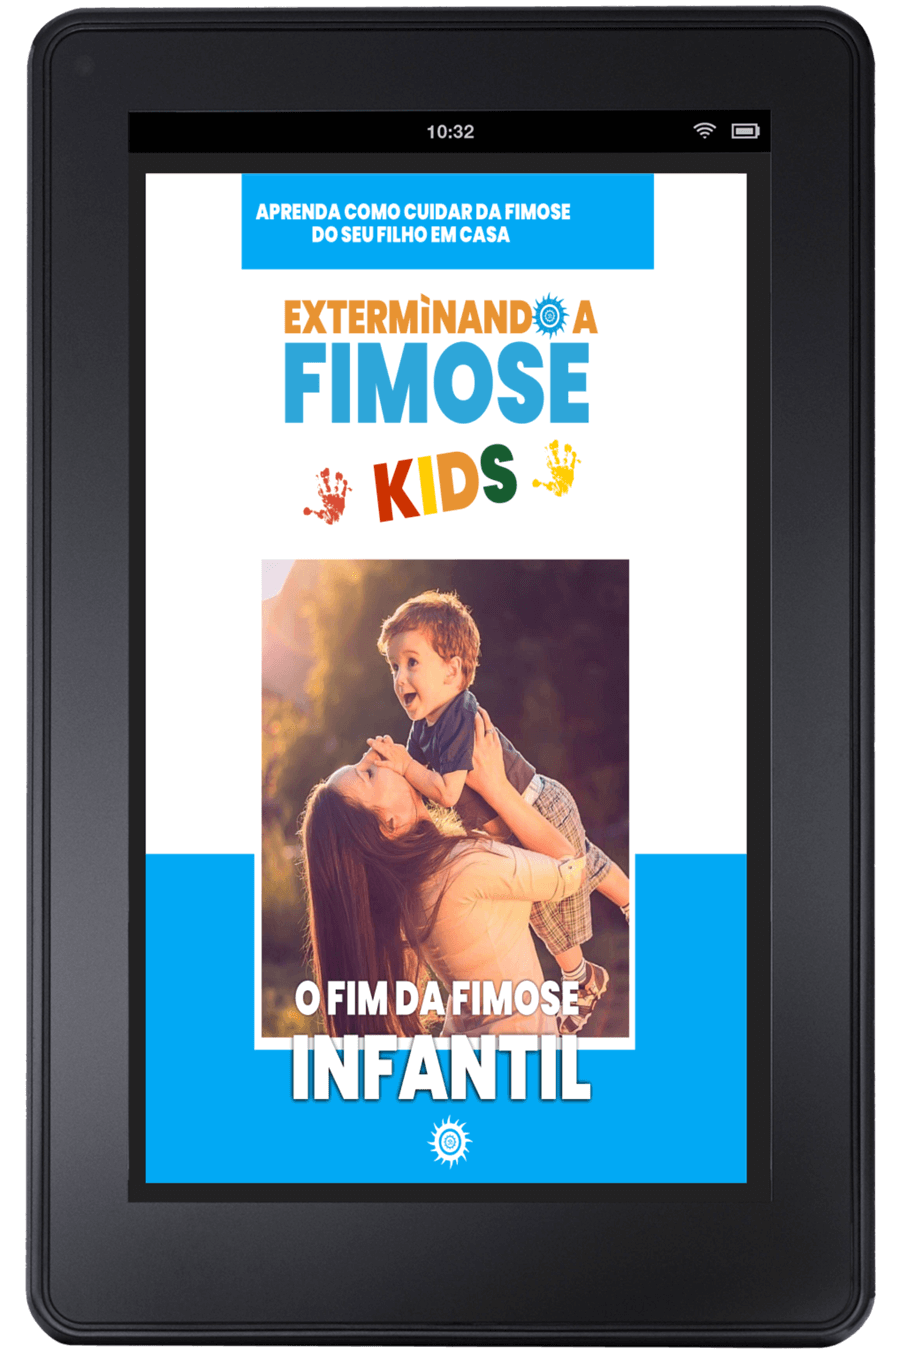 exterminando a fimose kids efk - Extermìnando a Fimose Kids - Tratamento natural para fimose infantil